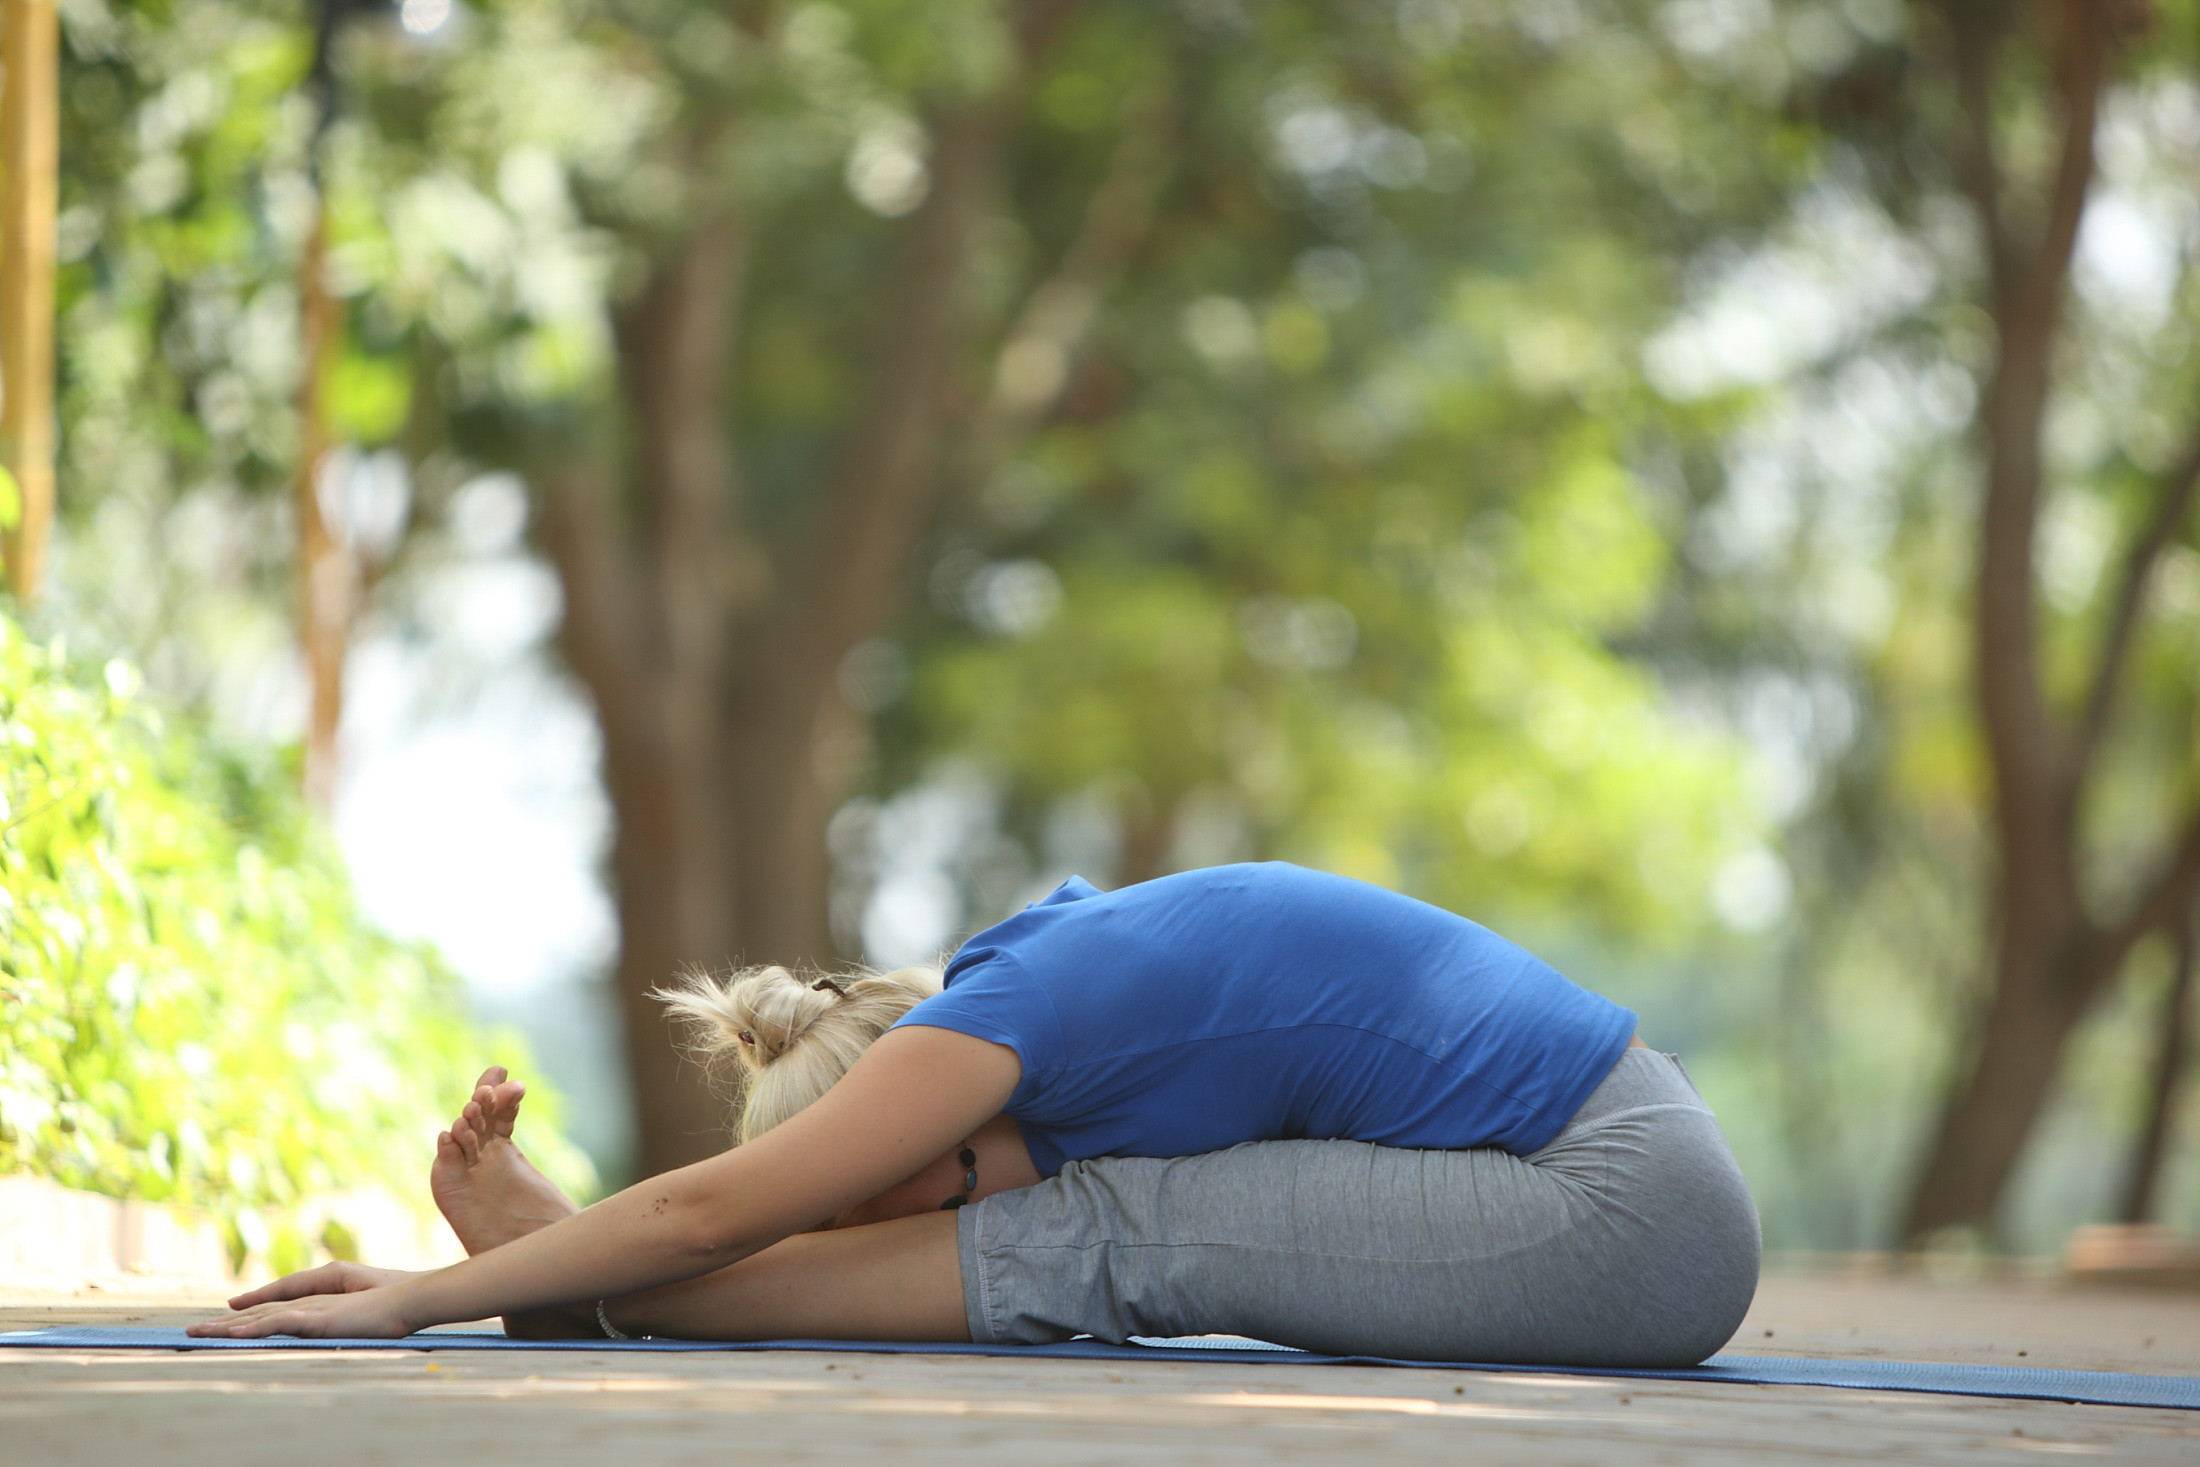 10 Easy Yoga Asanas for Beginners - The Art of Living